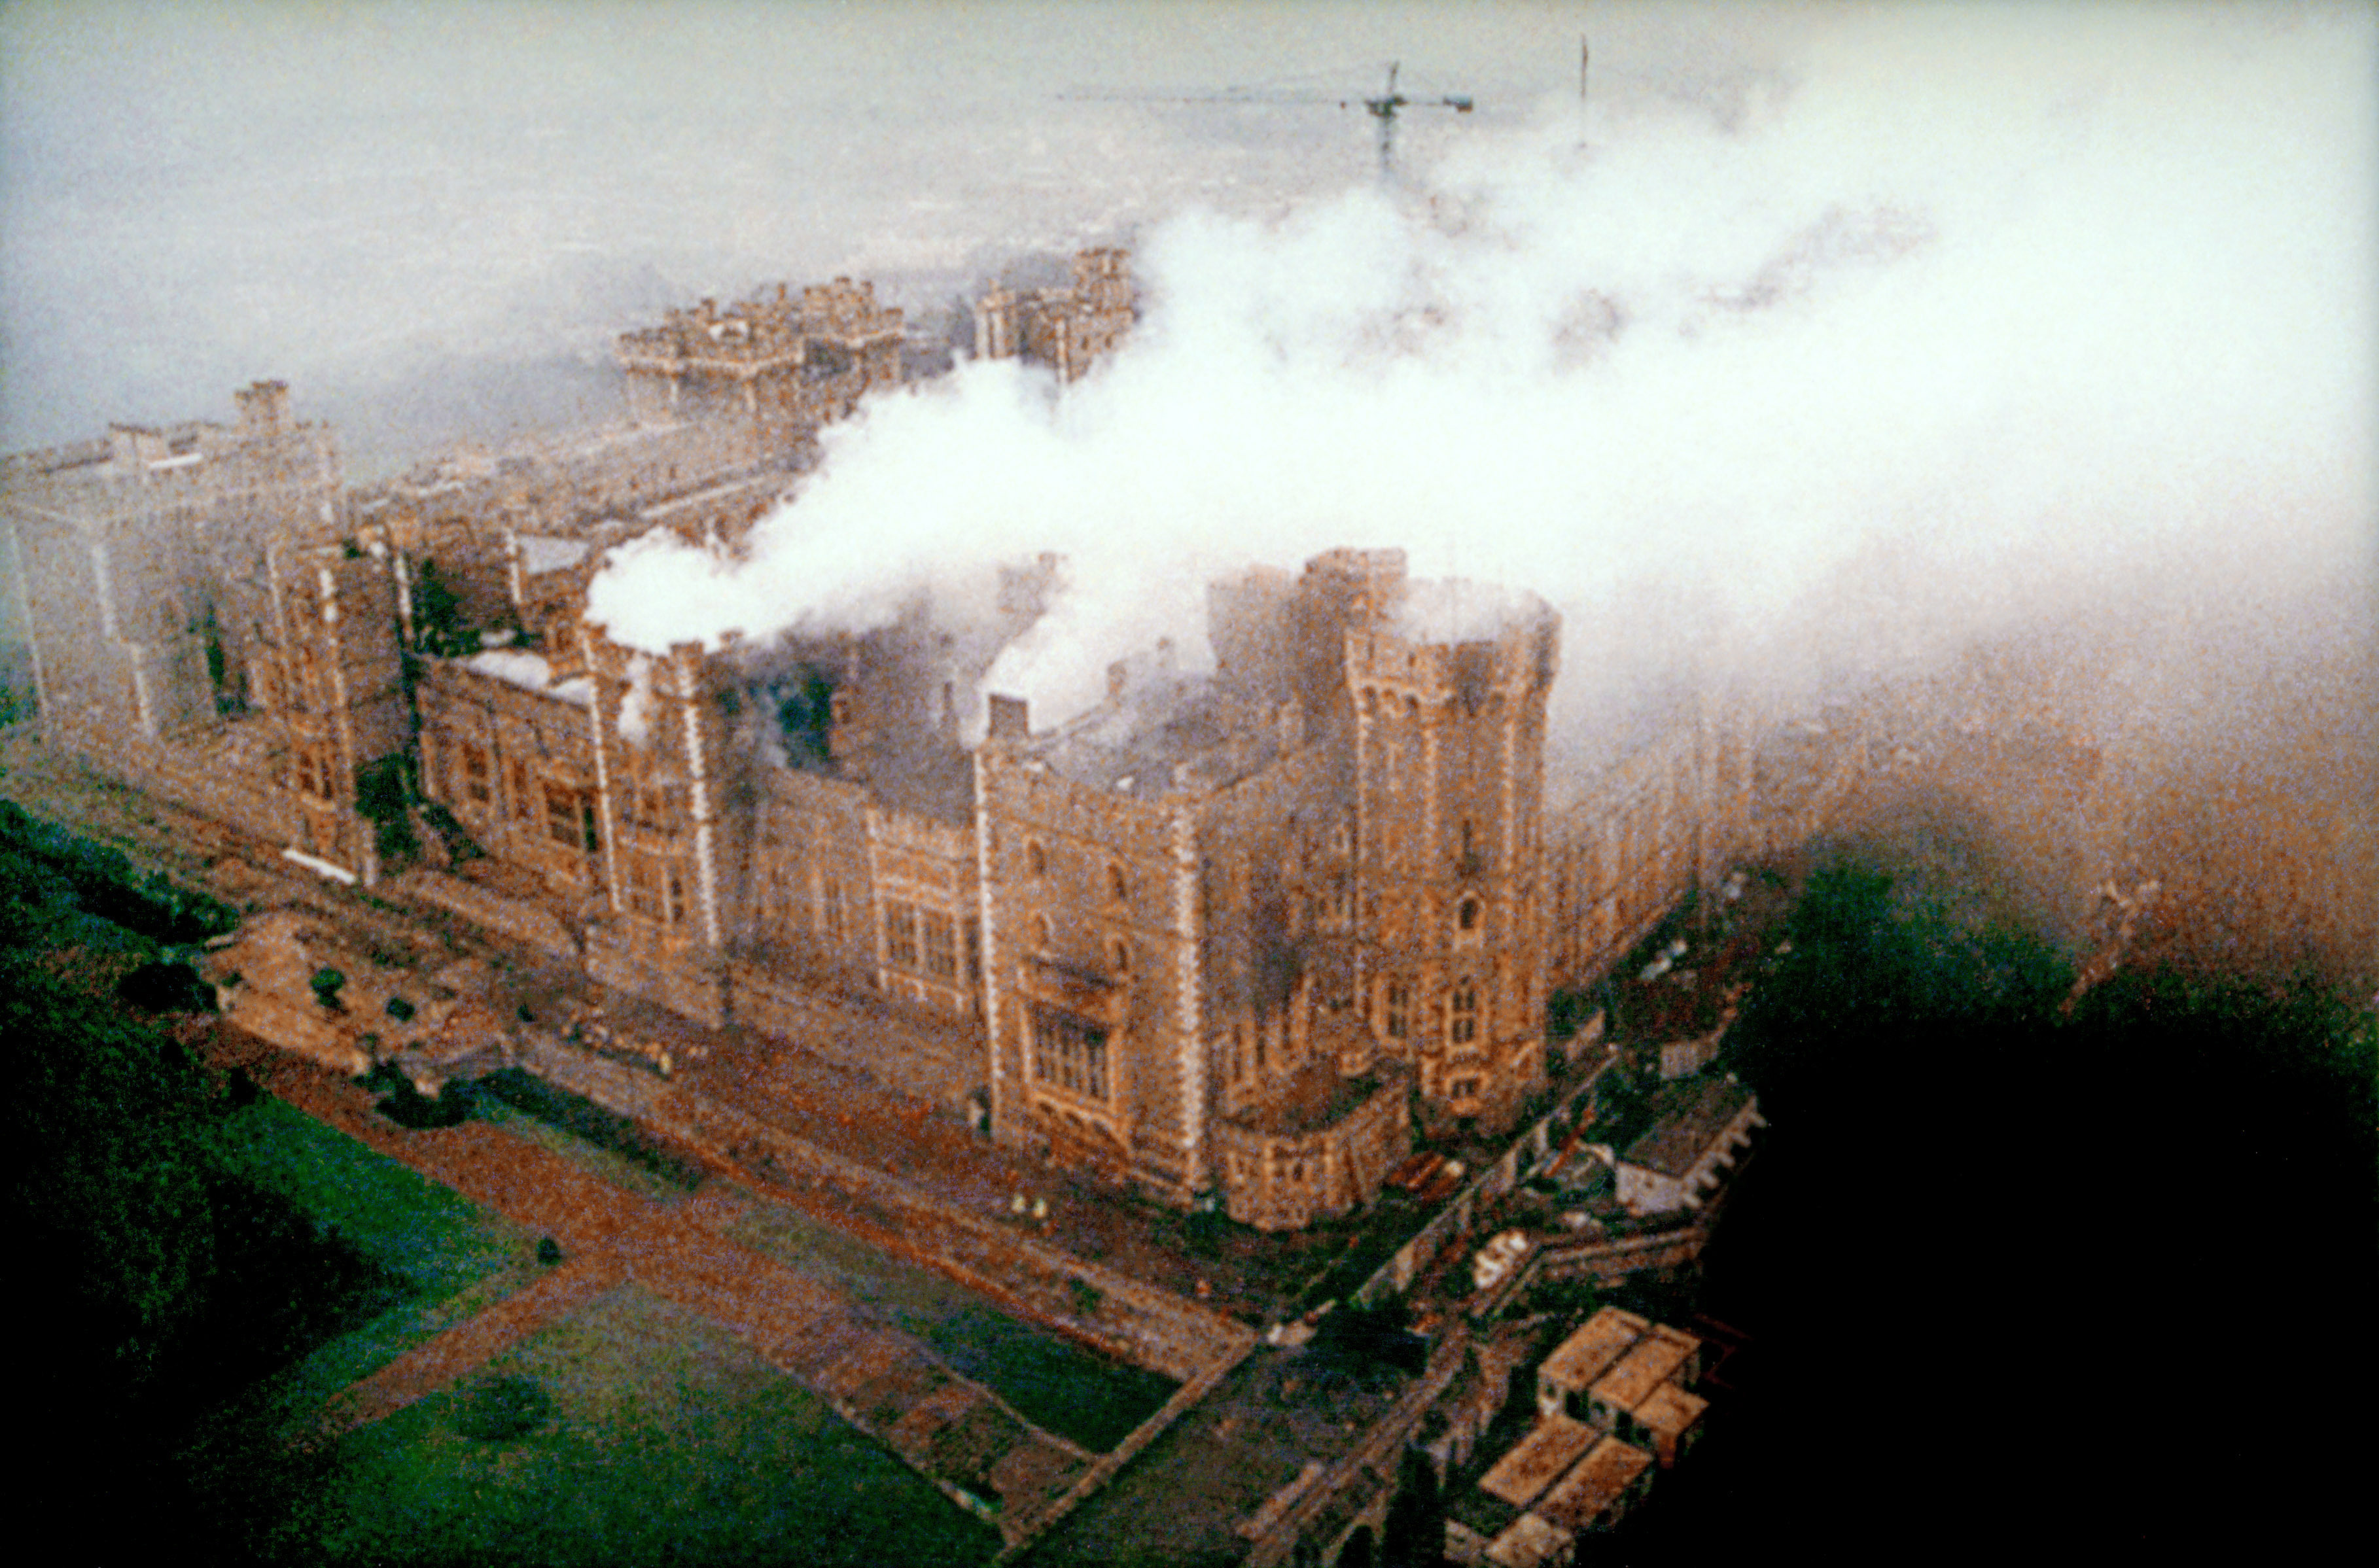 Le lendemain de l'incendie qui a gravement endommagé de grandes parties du château de Windsor